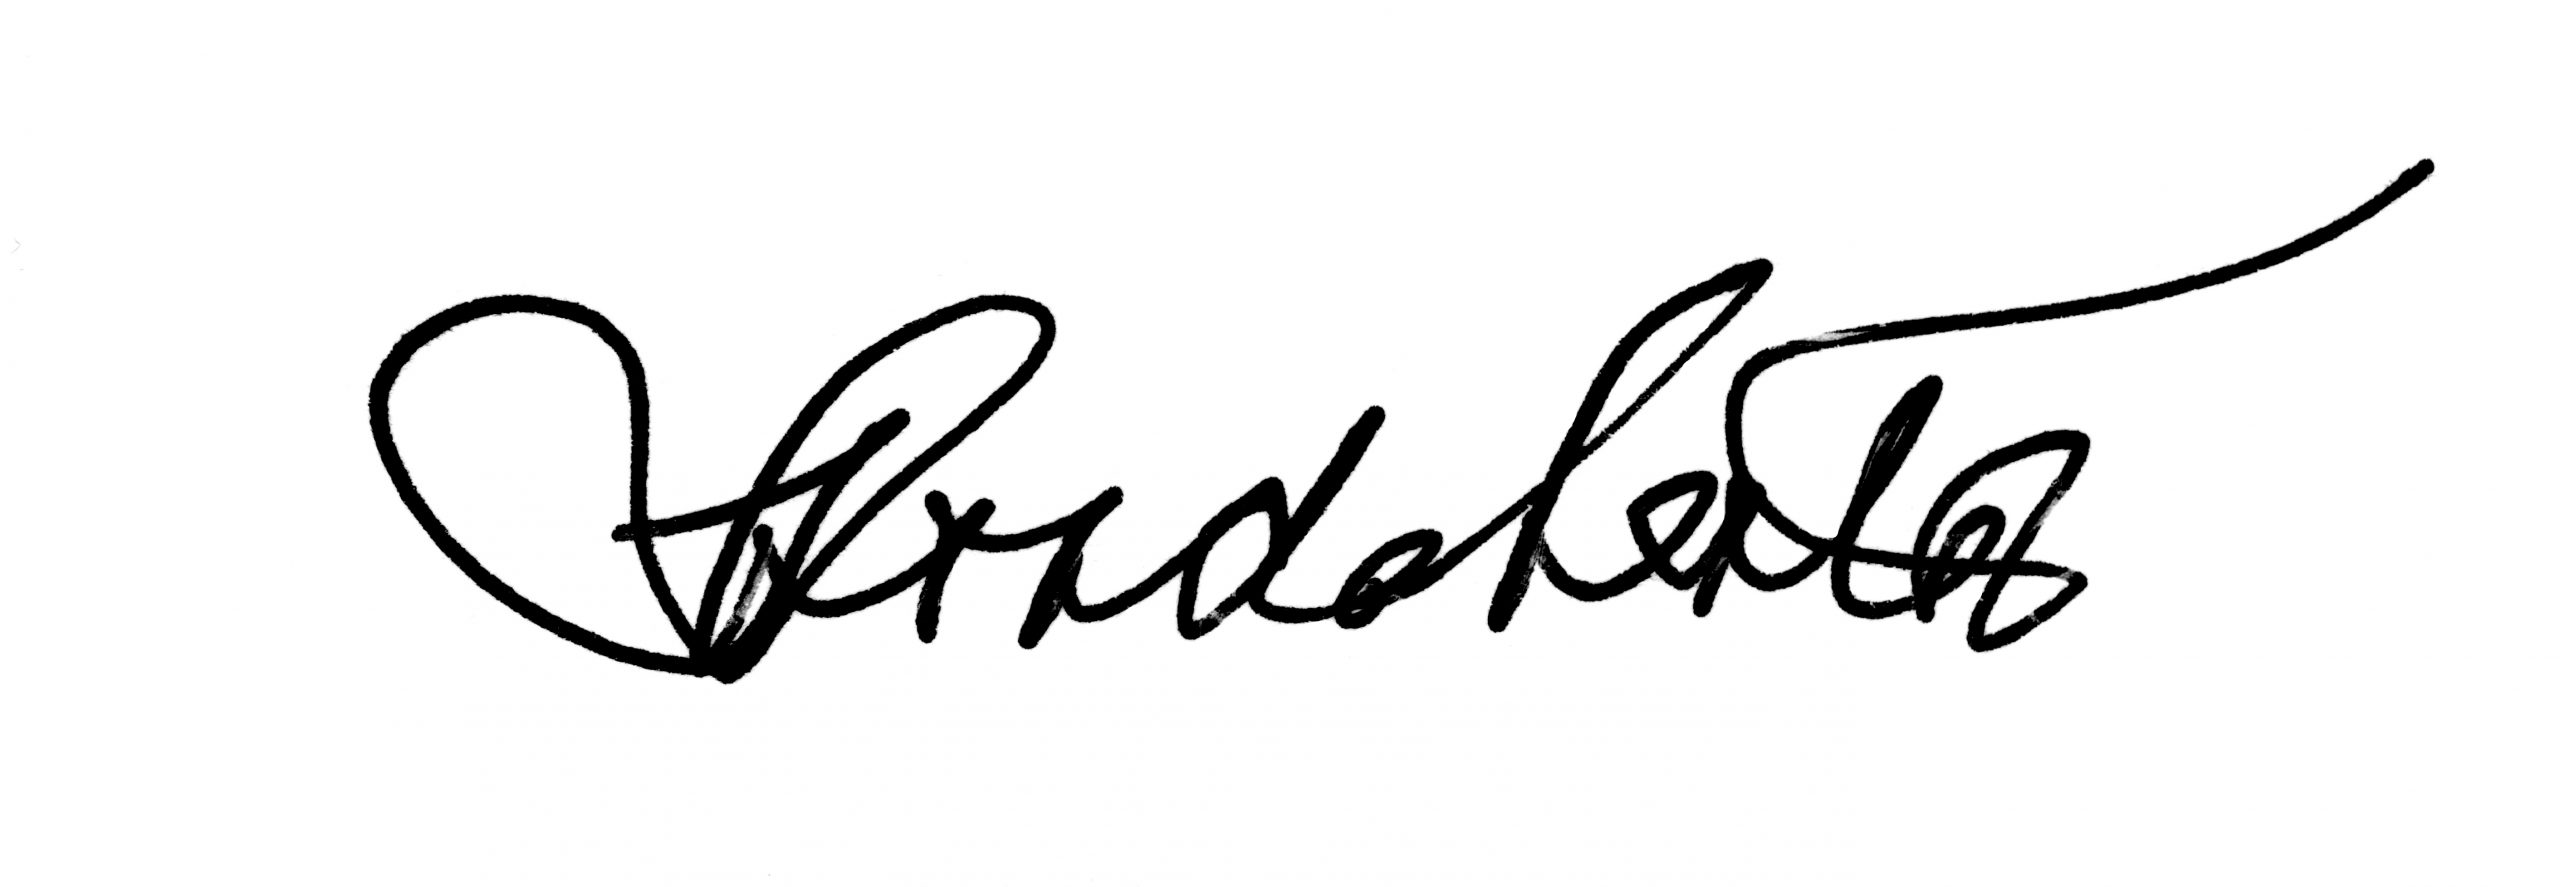 Rhonda Lenton signature